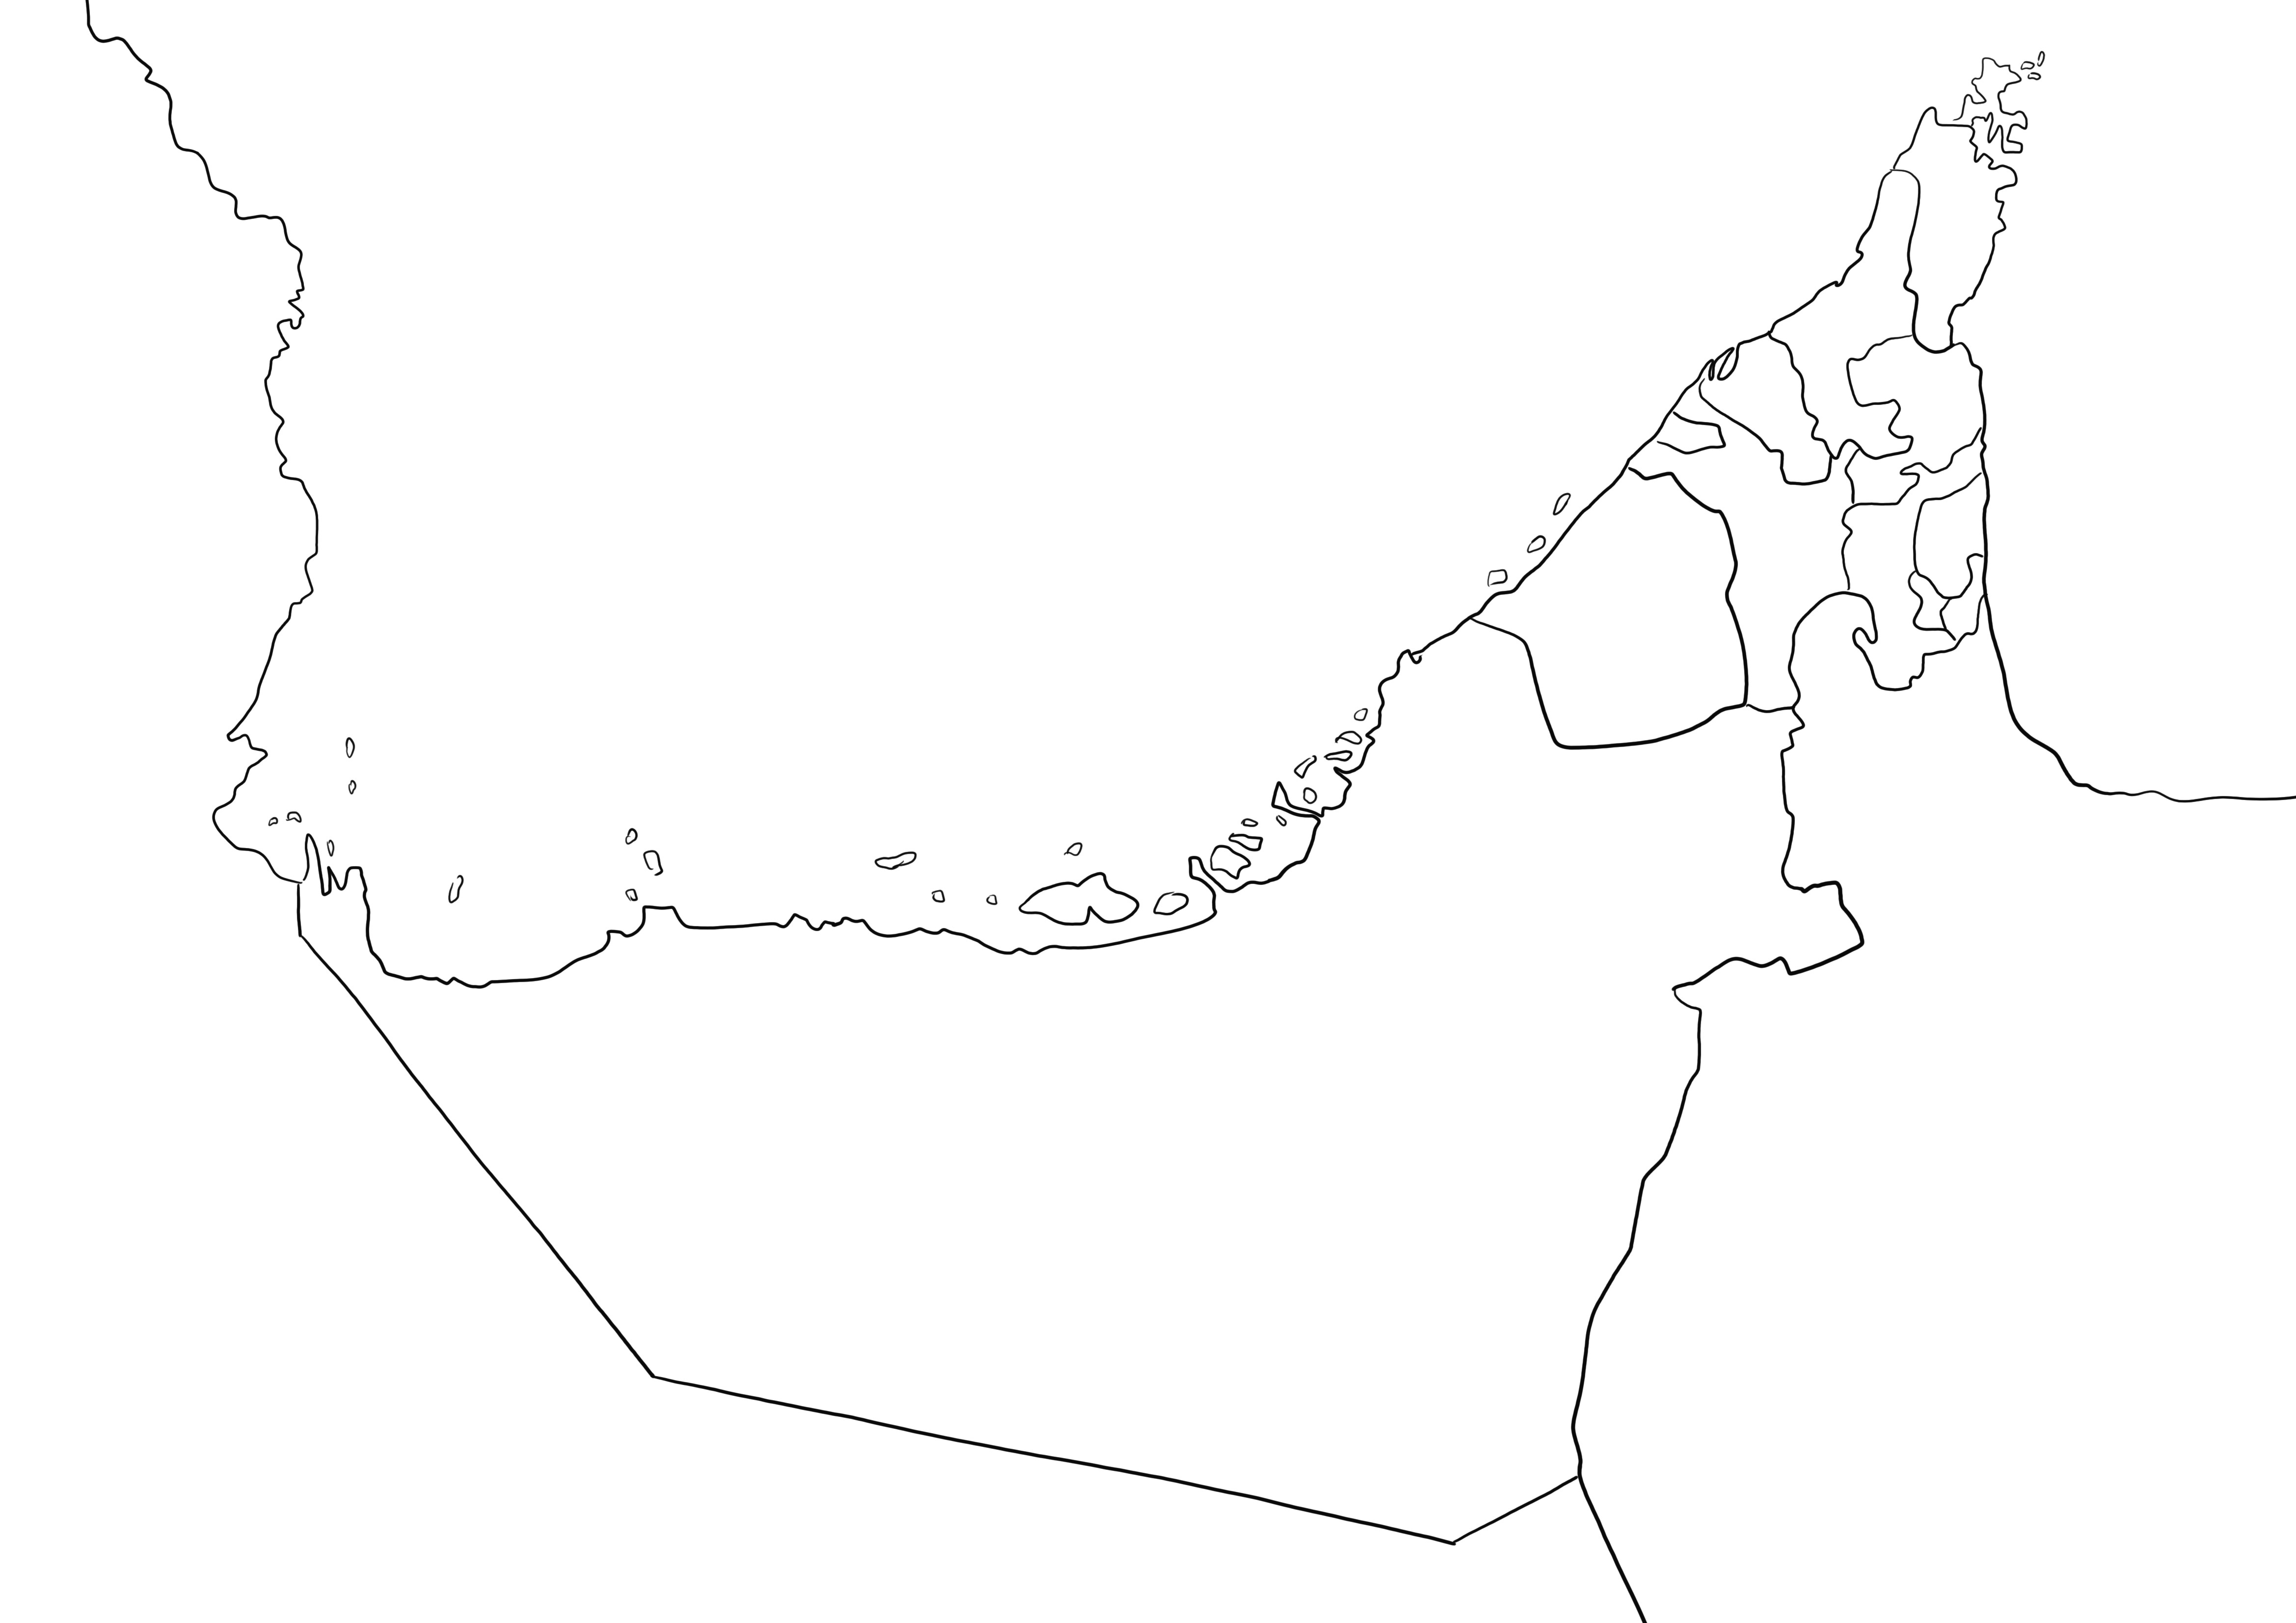 Mappa degli Emirati Arabi Uniti pagina semplice stampabile gratuitamente in bianco e nero facile da colorare per i bambini